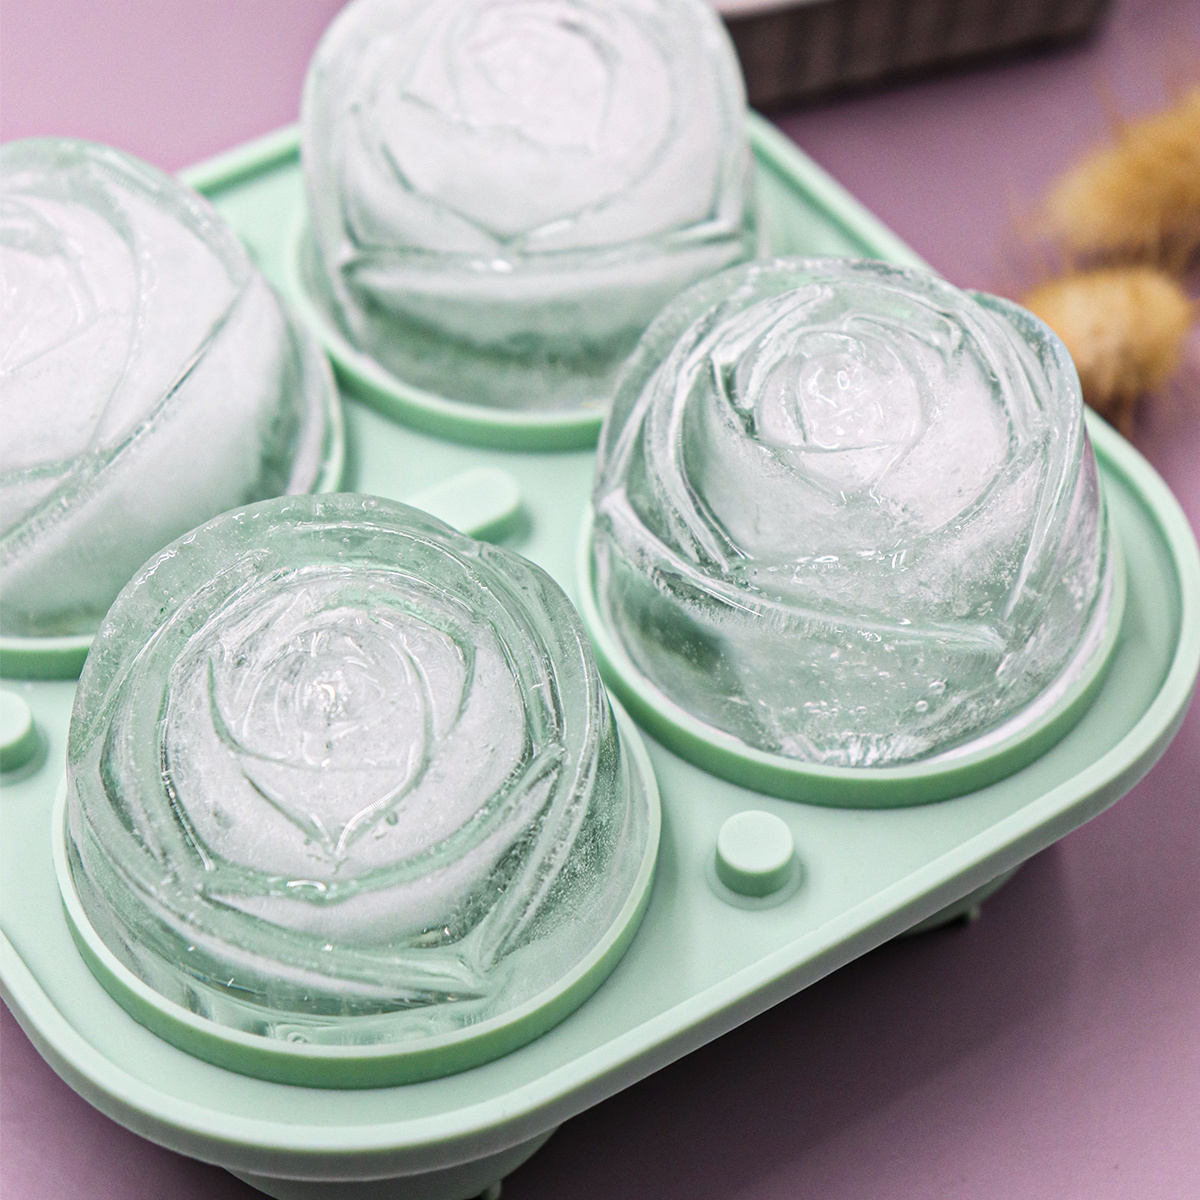 3D Silicone Ice Cube Shape Rose Shape Icecream Mold Freezer Ice Balls DIY  US